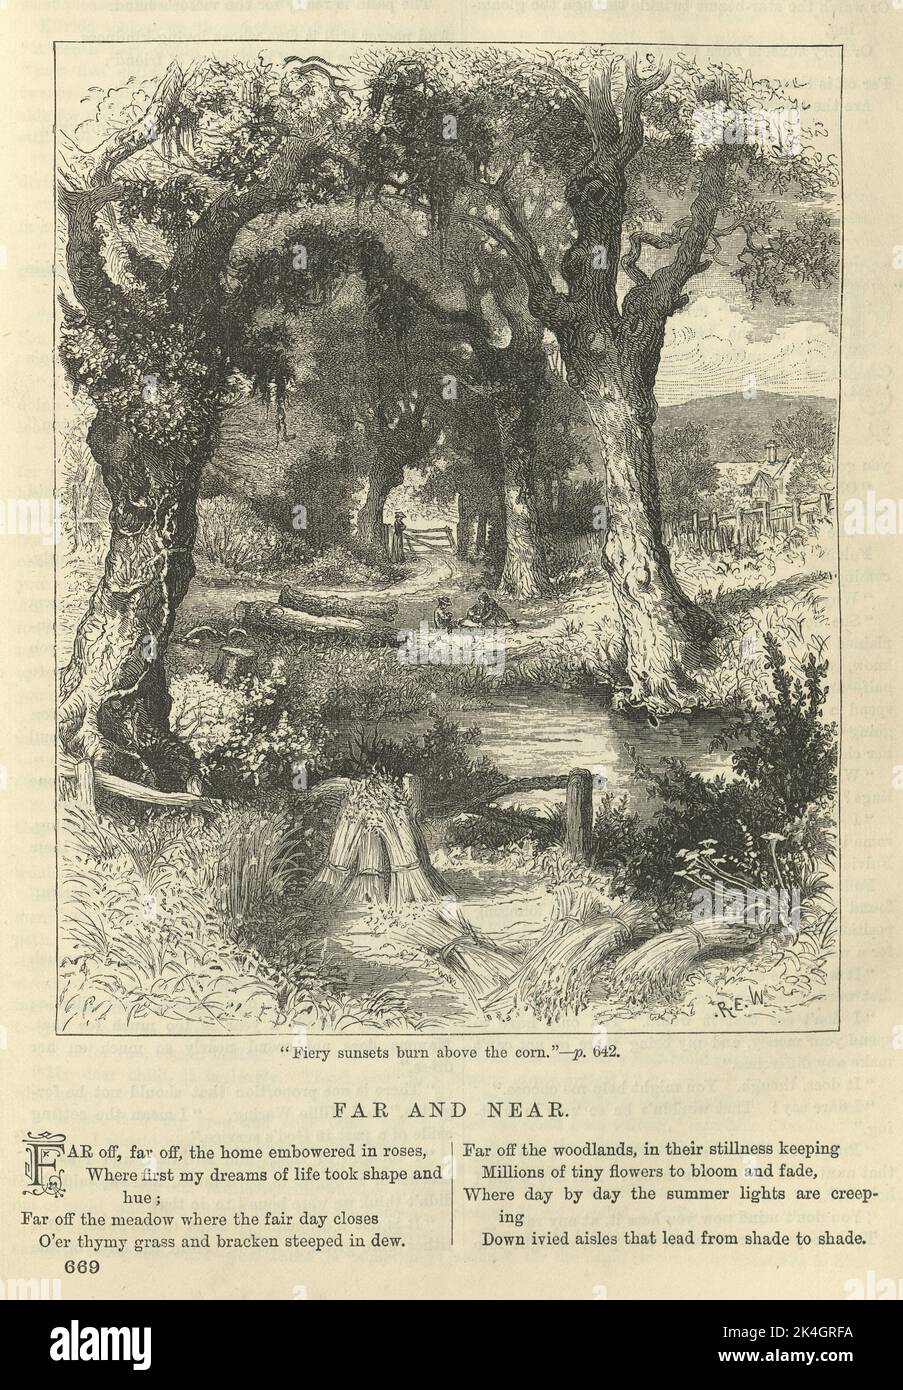 Illustration pour le poème victorien Far and Near, 1870s, 19th Century, champ de blé, chemin des bois, Paysage rural Banque D'Images